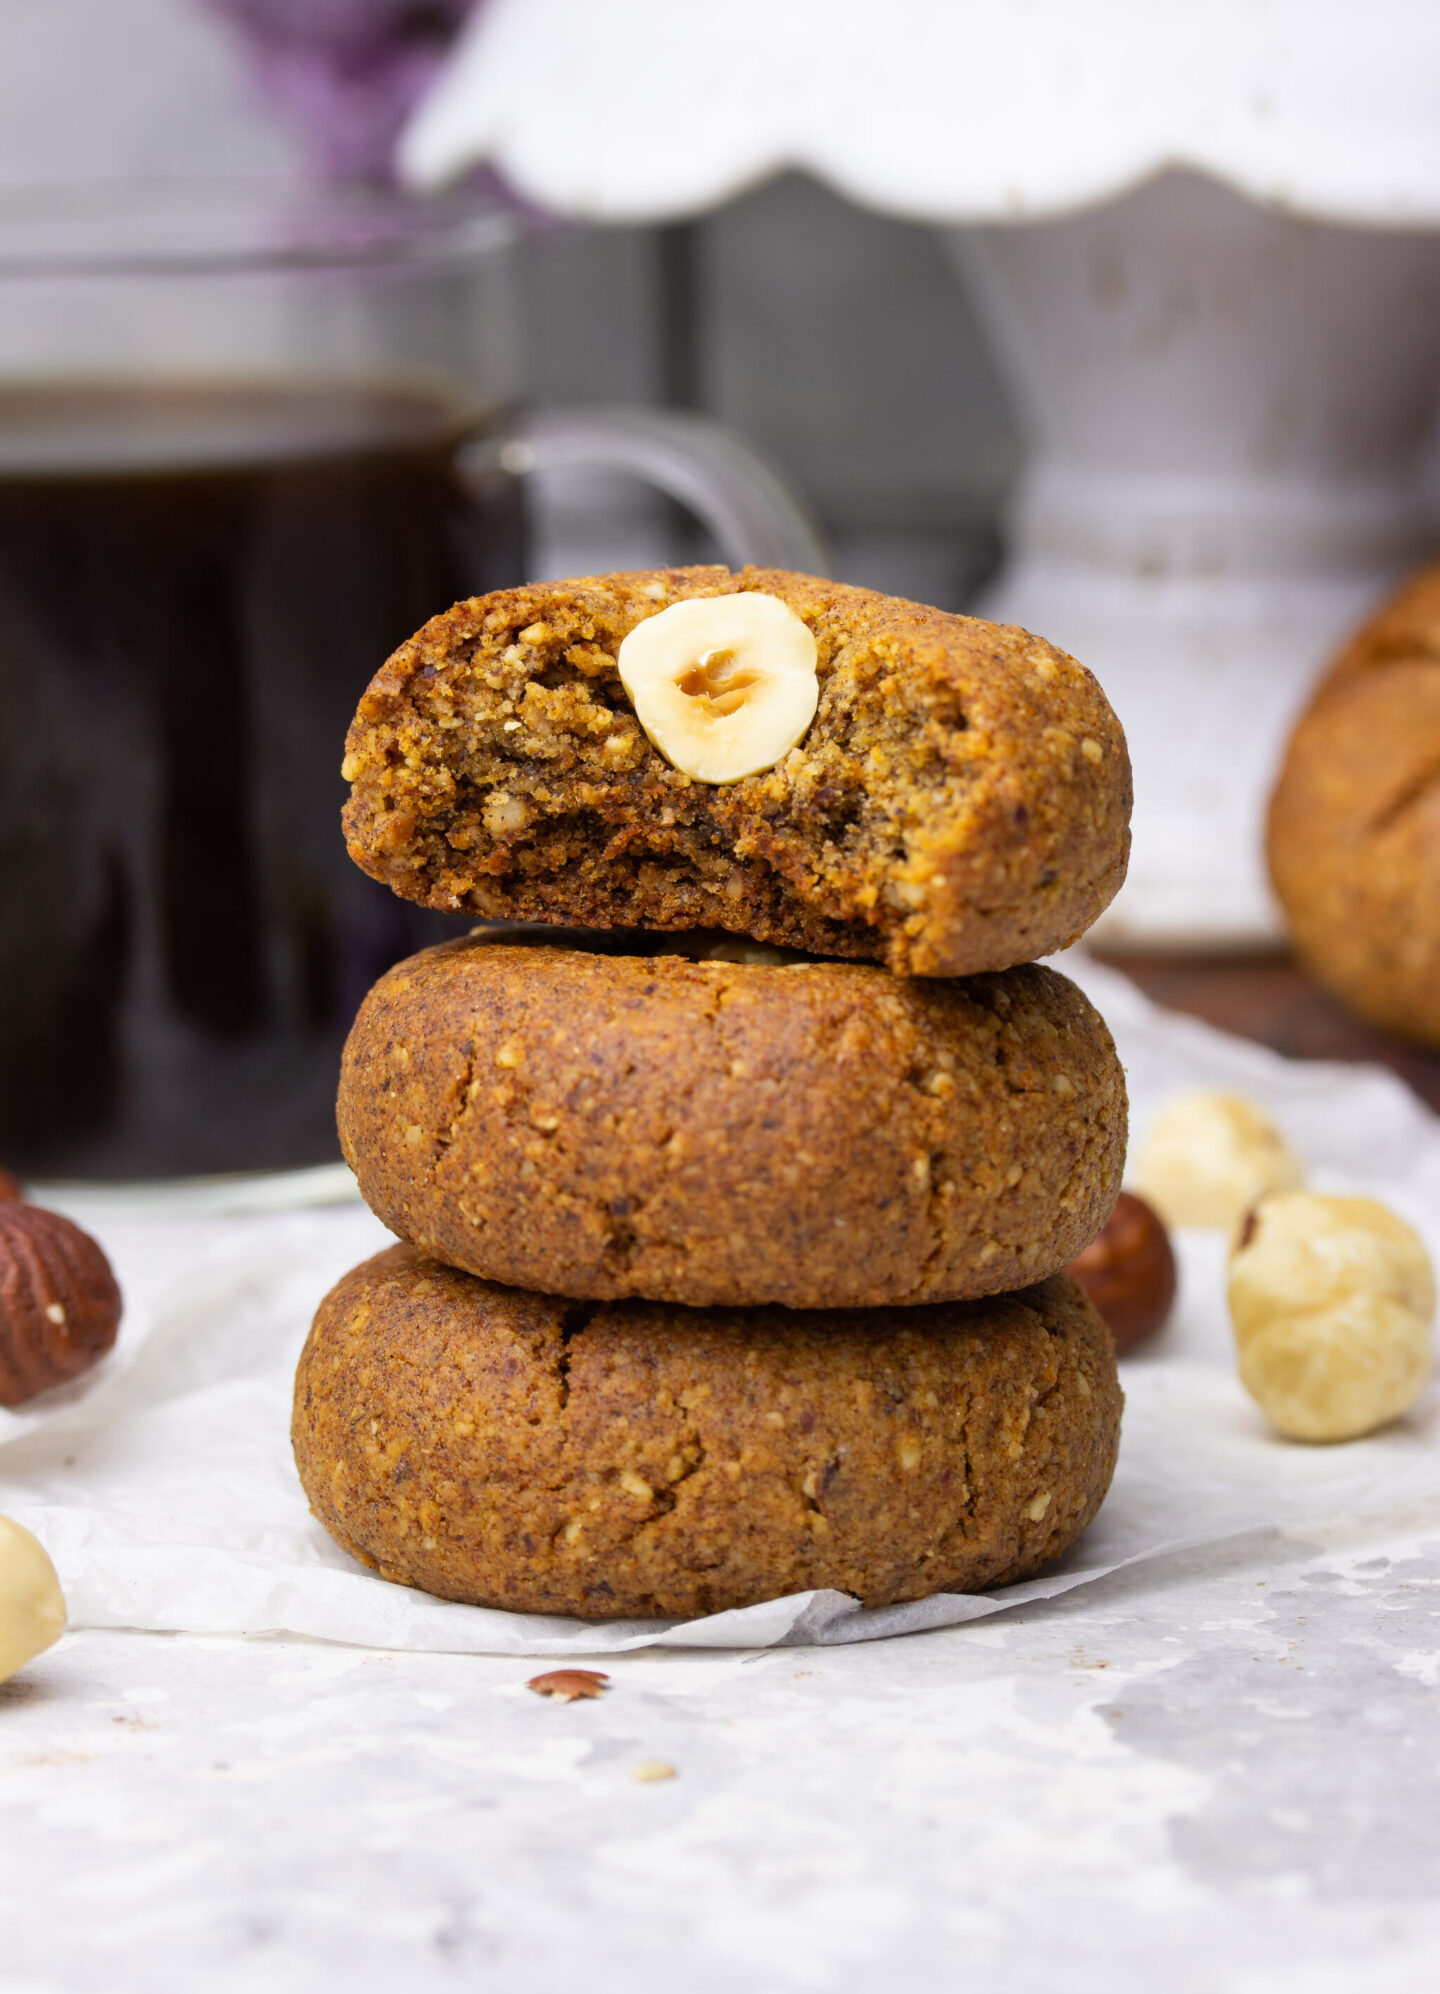 Hazelnut Macaroon Cookies – “Nöttoppar”